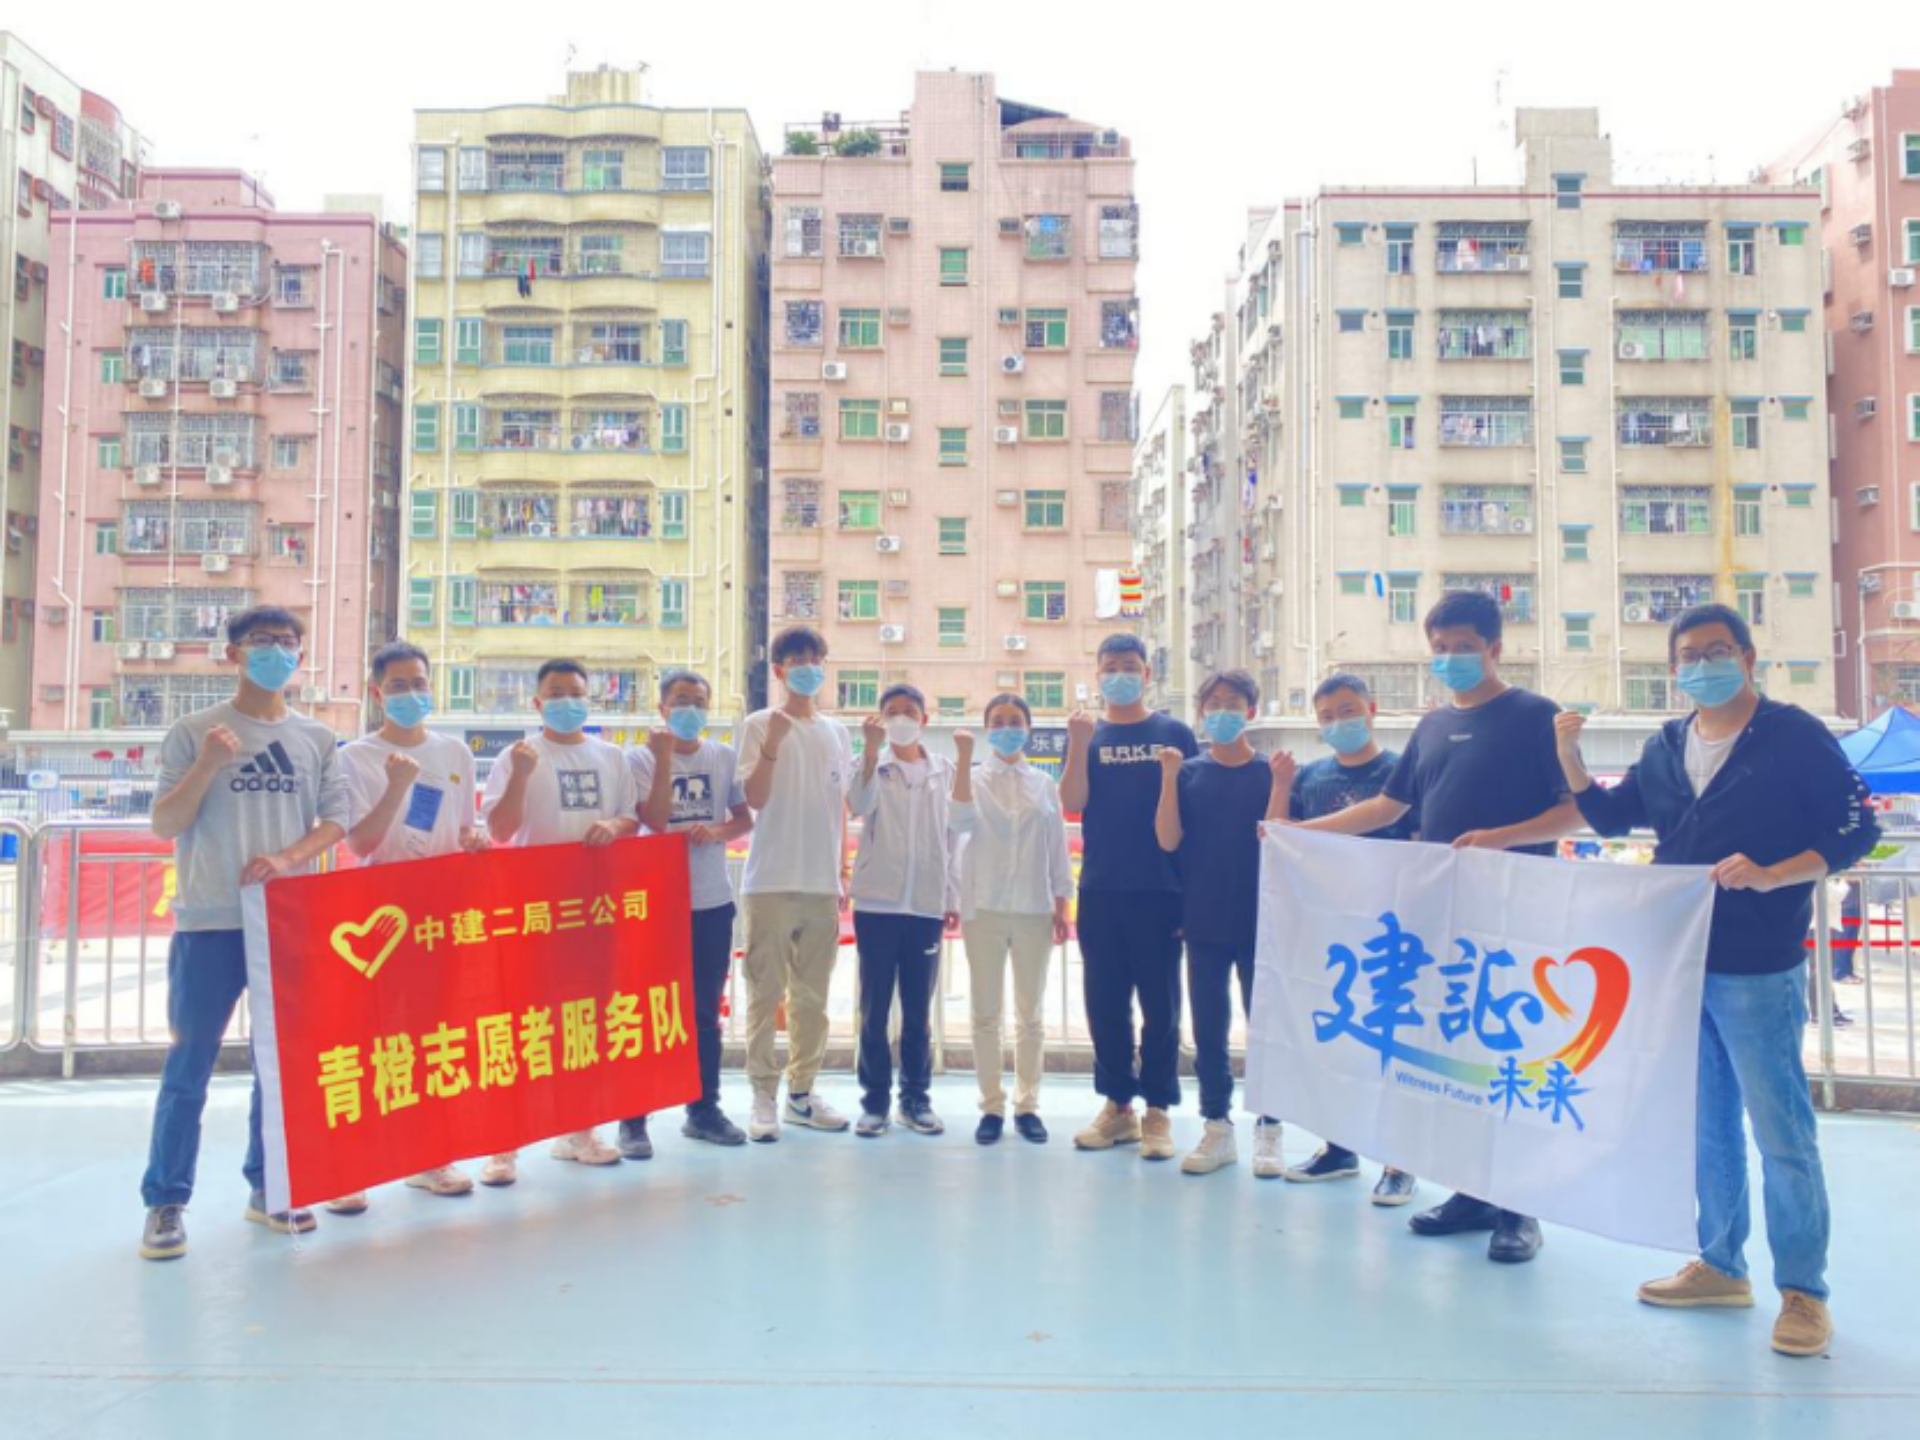 中建二局三公司青橙志愿者服务队驰援沙头防疫